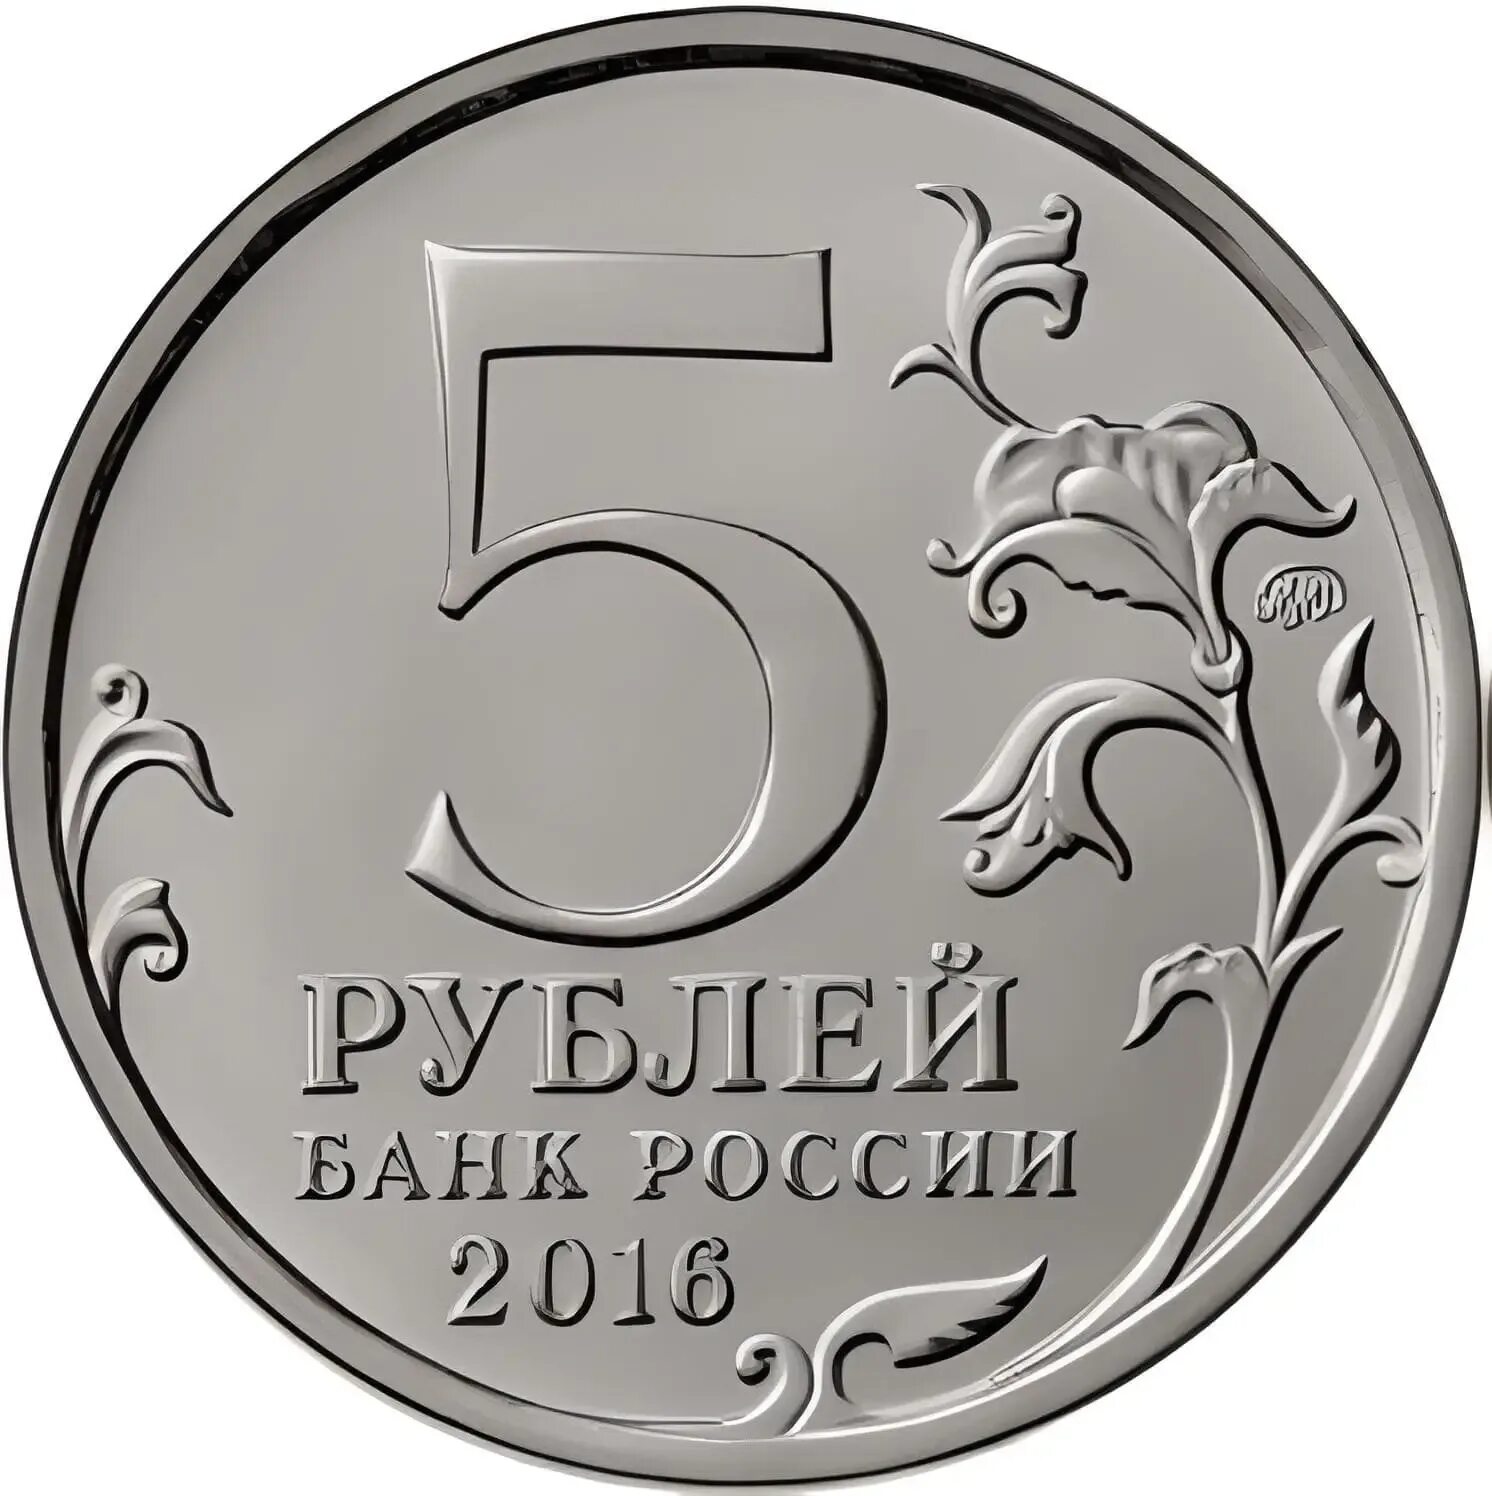 5 рублей недорого. Монета 5 рублей. Изображение 5 рублей. Монета 2 рубля на прозрачном фоне. Монета 5 руб для фотошопа.